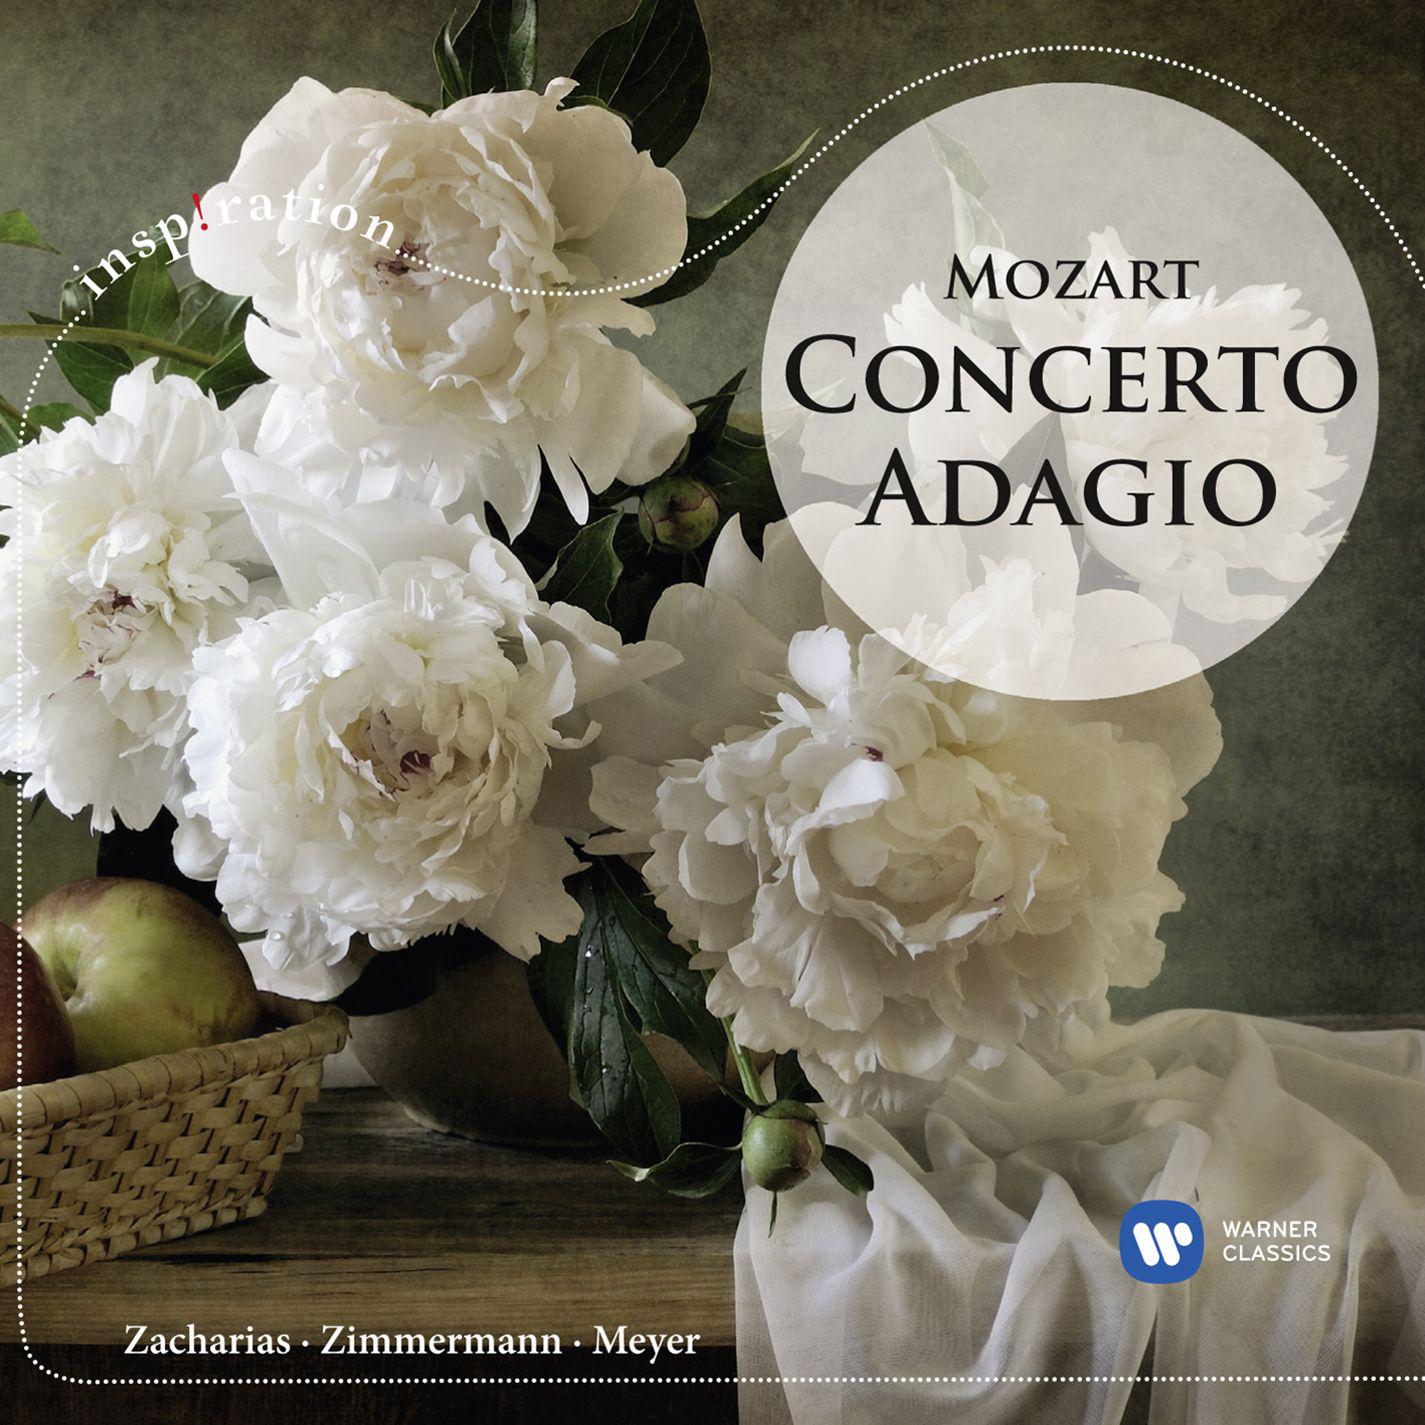 Concerto for 2 Pianos No. 7 in F Major, K. 242:II. Adagio